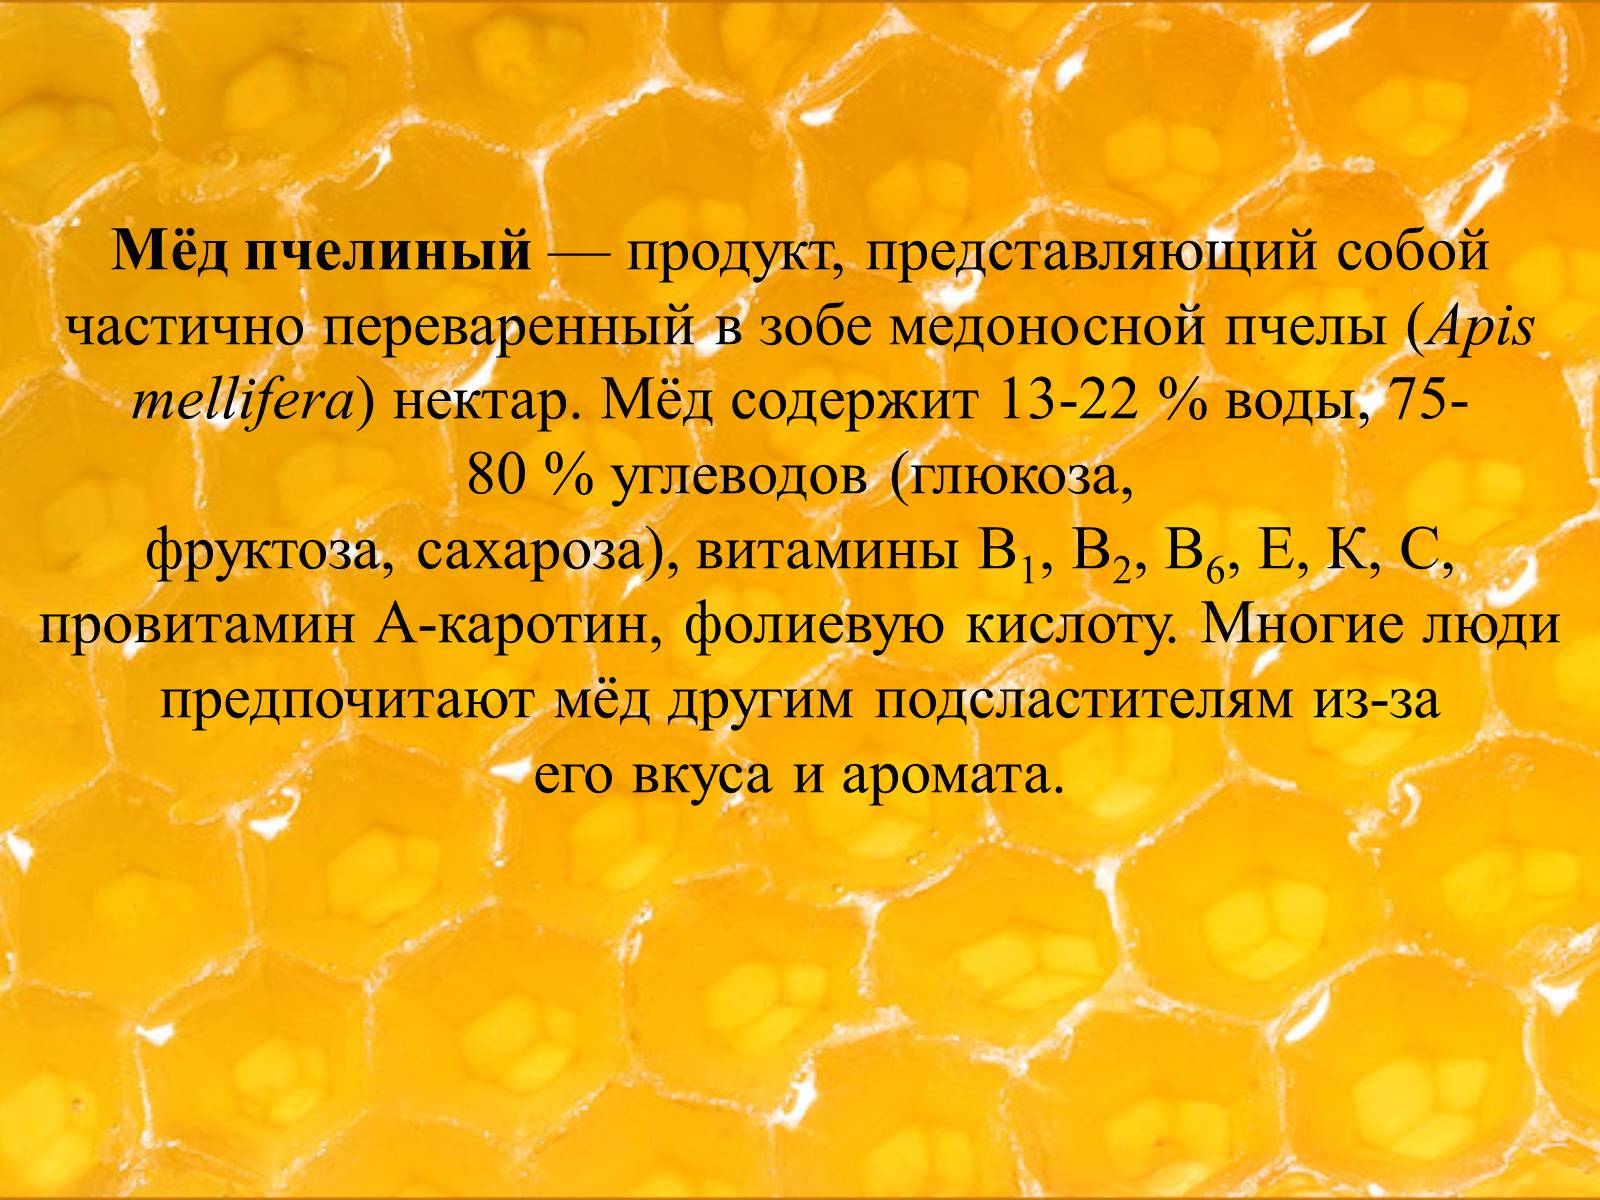 Слова из слова нектар. Биологическая ценность меда. Продукты пчеловодства. Прнзентация на тему мёд. Сообщение про мед.